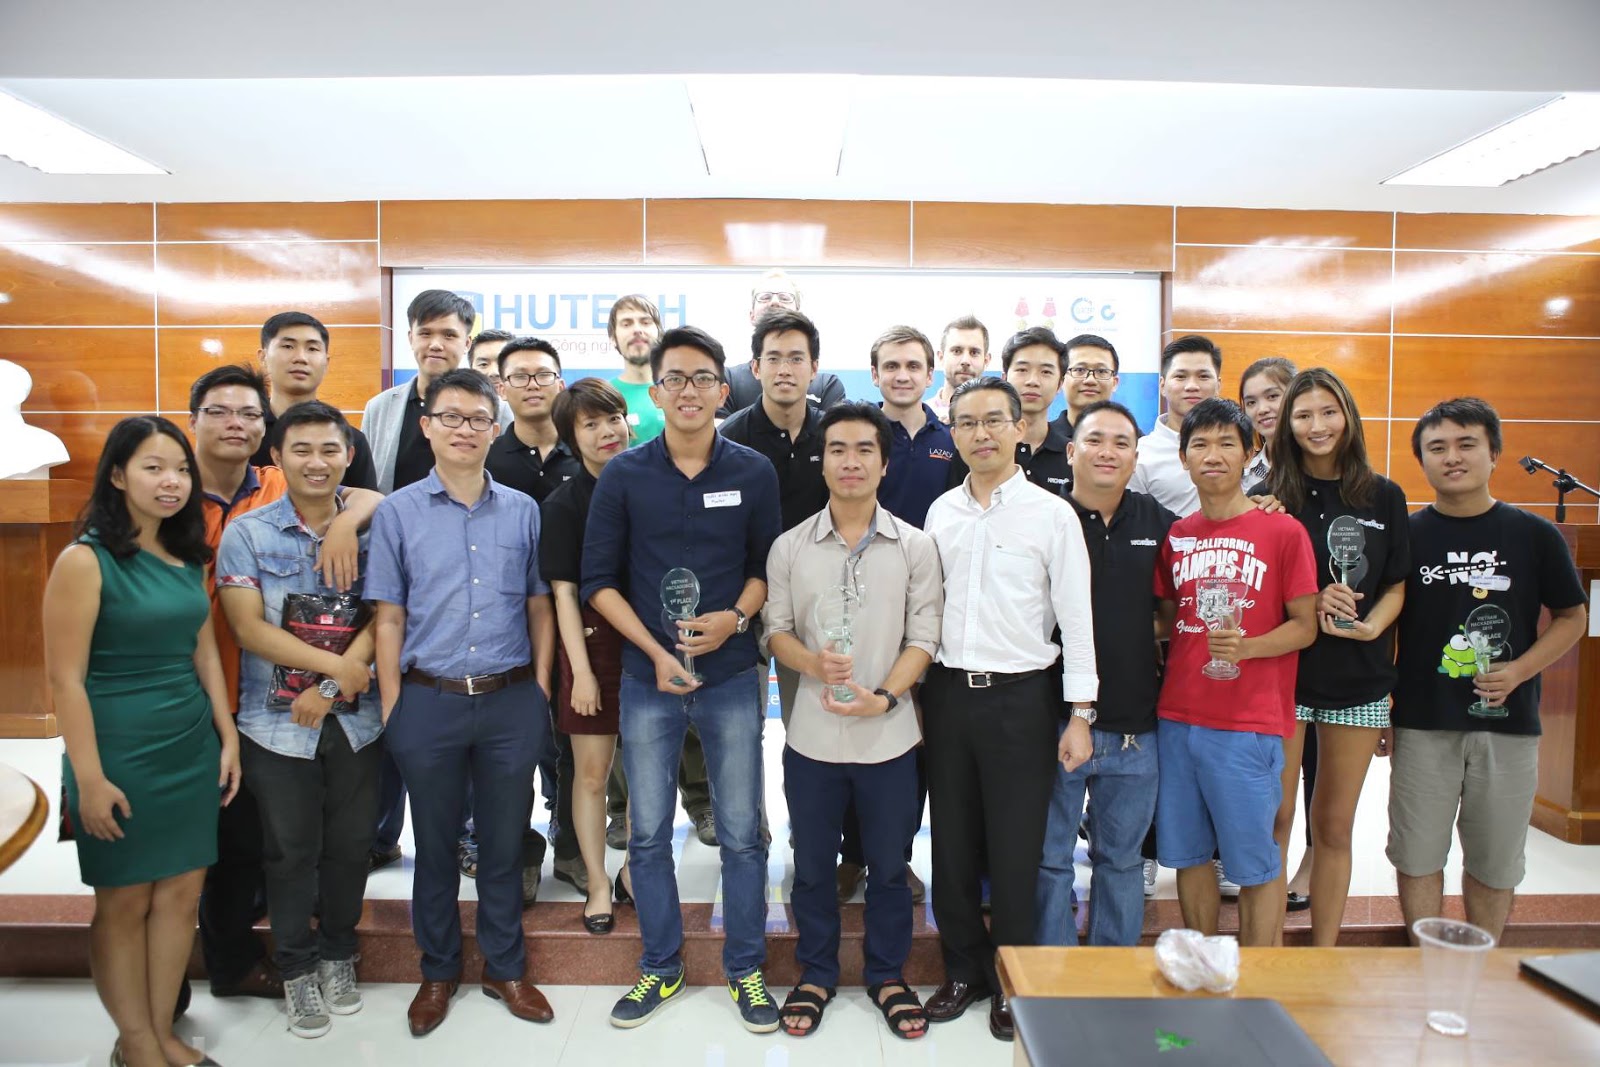 SV HUTECH đạt giải “Excellent Coding Skill” cuộc thi Vietnam Hackademics 2015 56